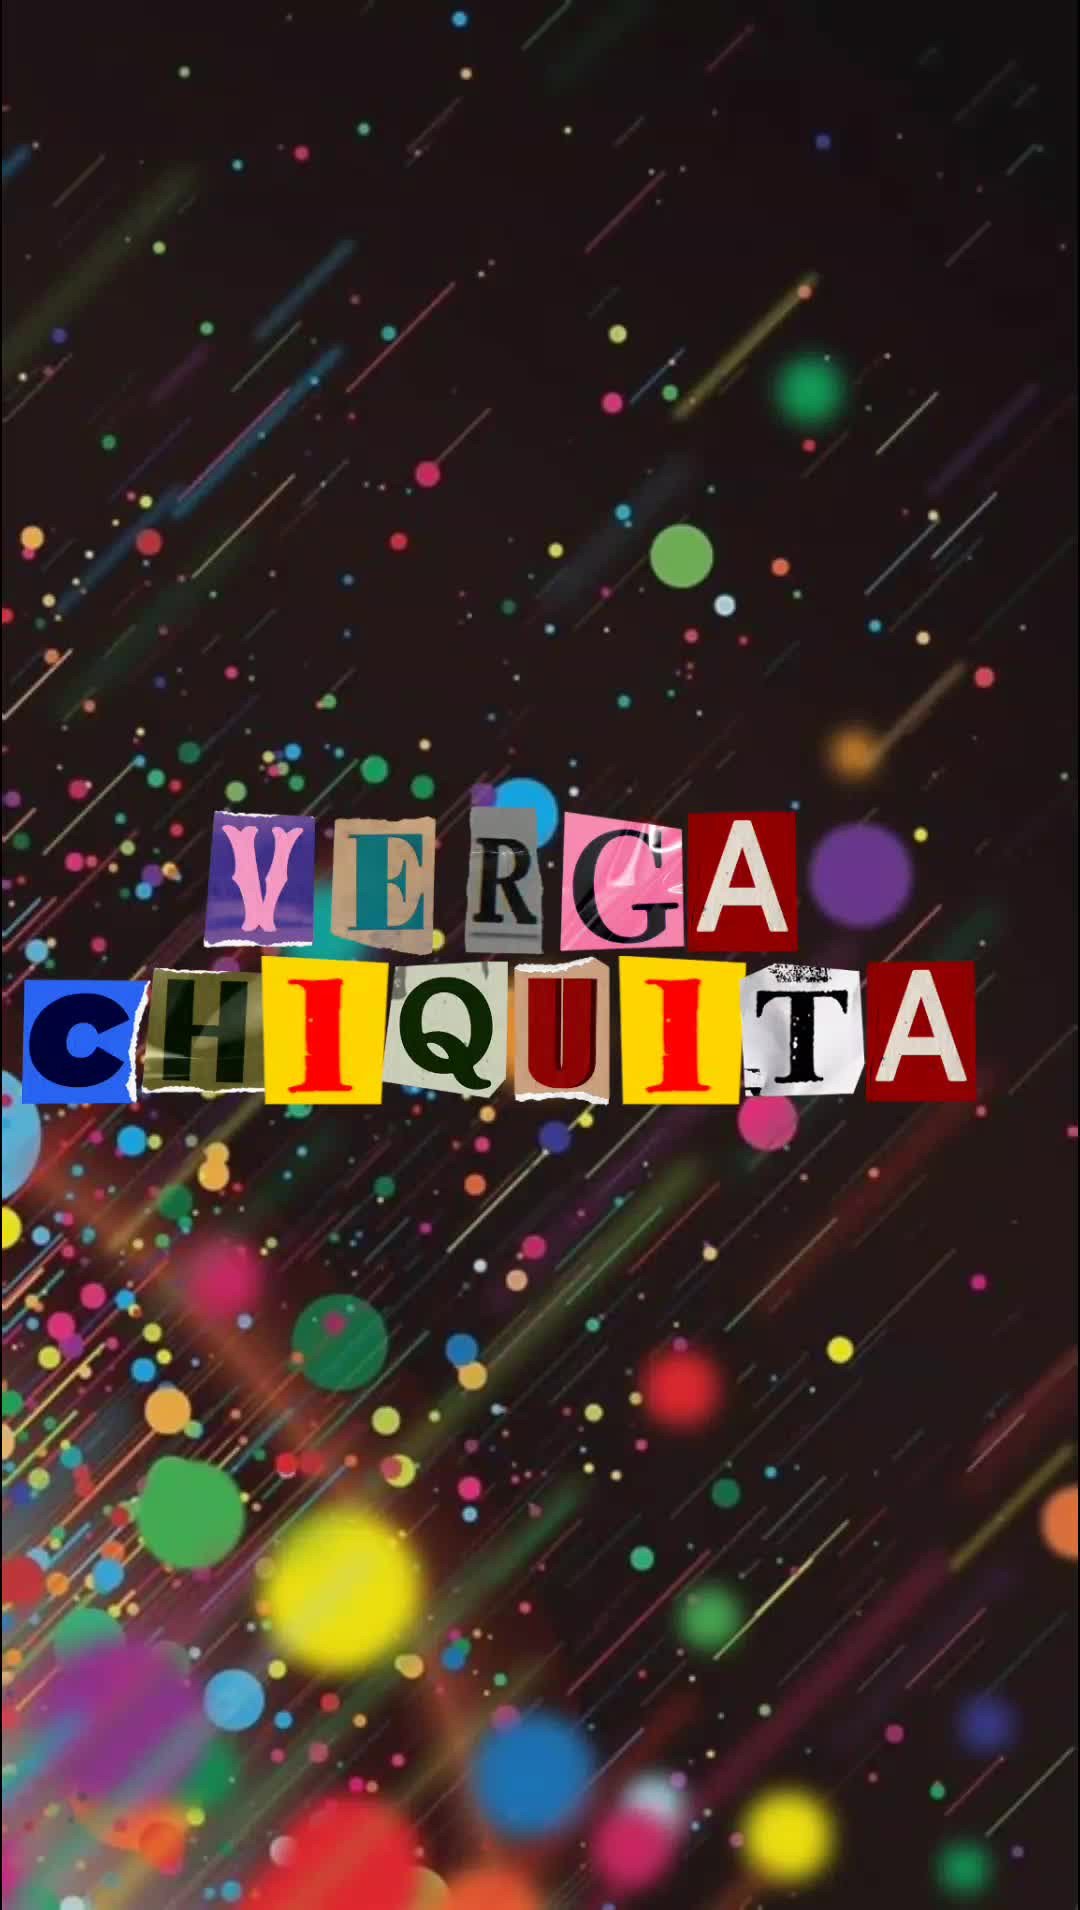 Video post by Verga-chiquita